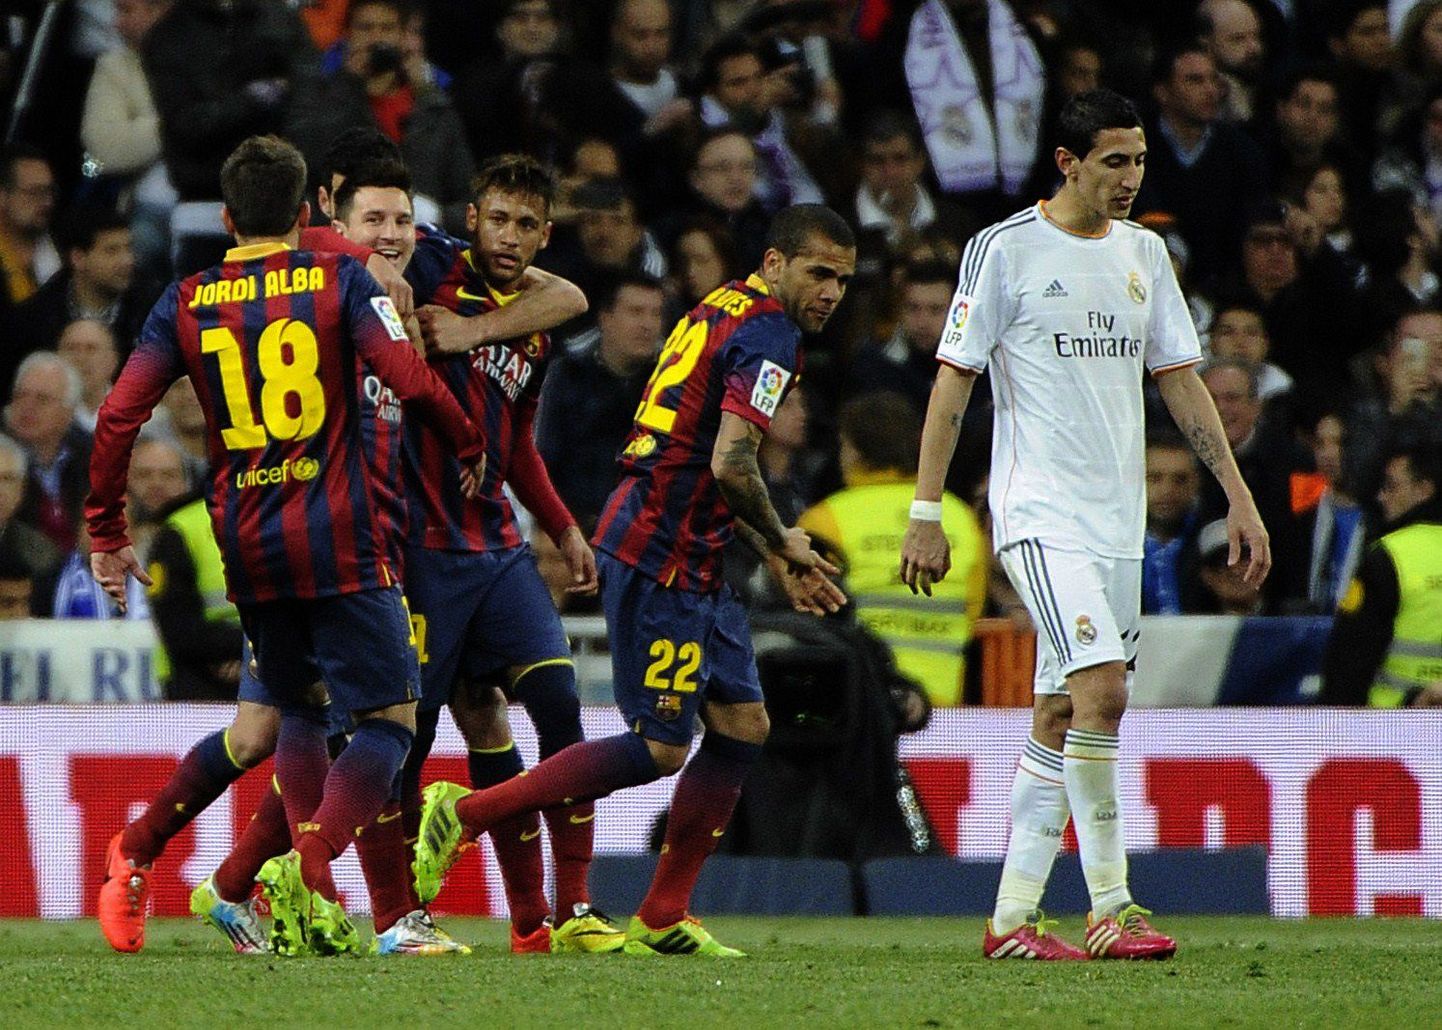 FC Barcelona mängijad (vasakul) alistas võõrsil igipõlise rivaali.